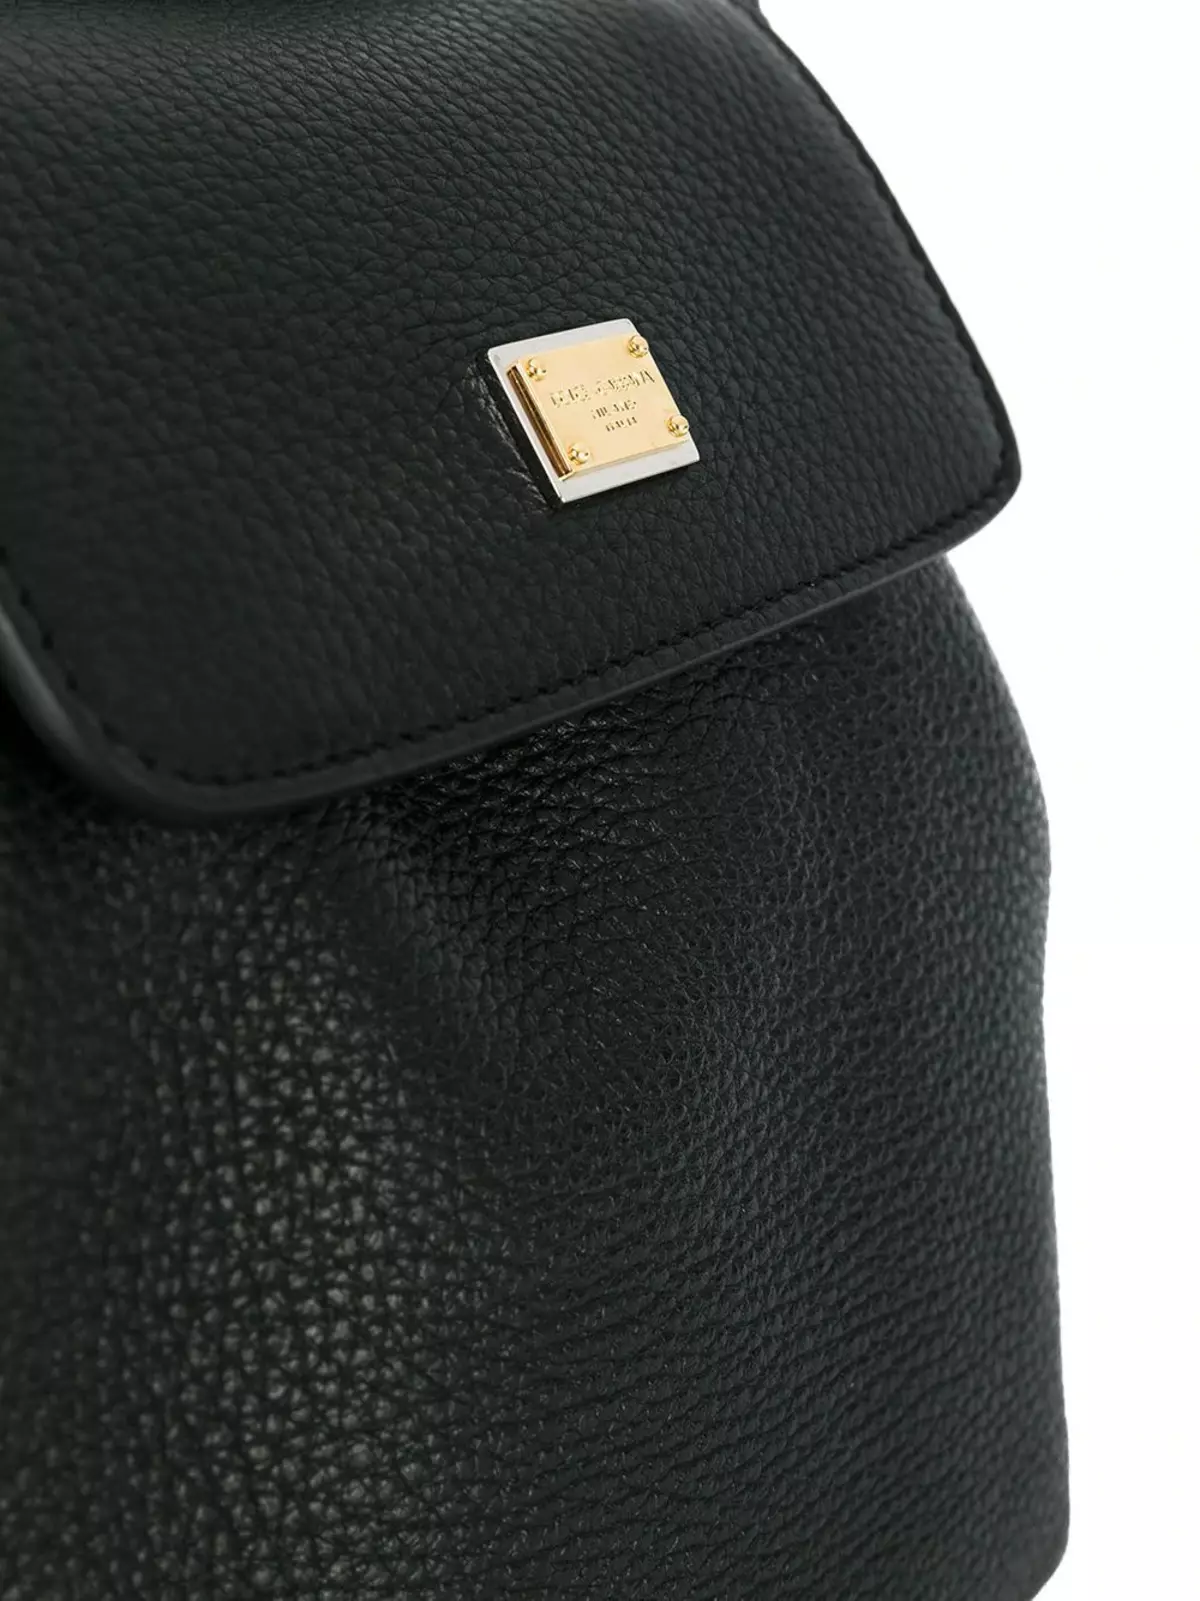 Dolce & Gabbana backpacks: femra dhe burra, black dhe të kuqe, backpacks lëkure çanta dhe modele të tjera. Si të dallojmë origjinalin nga kopja? 2559_21